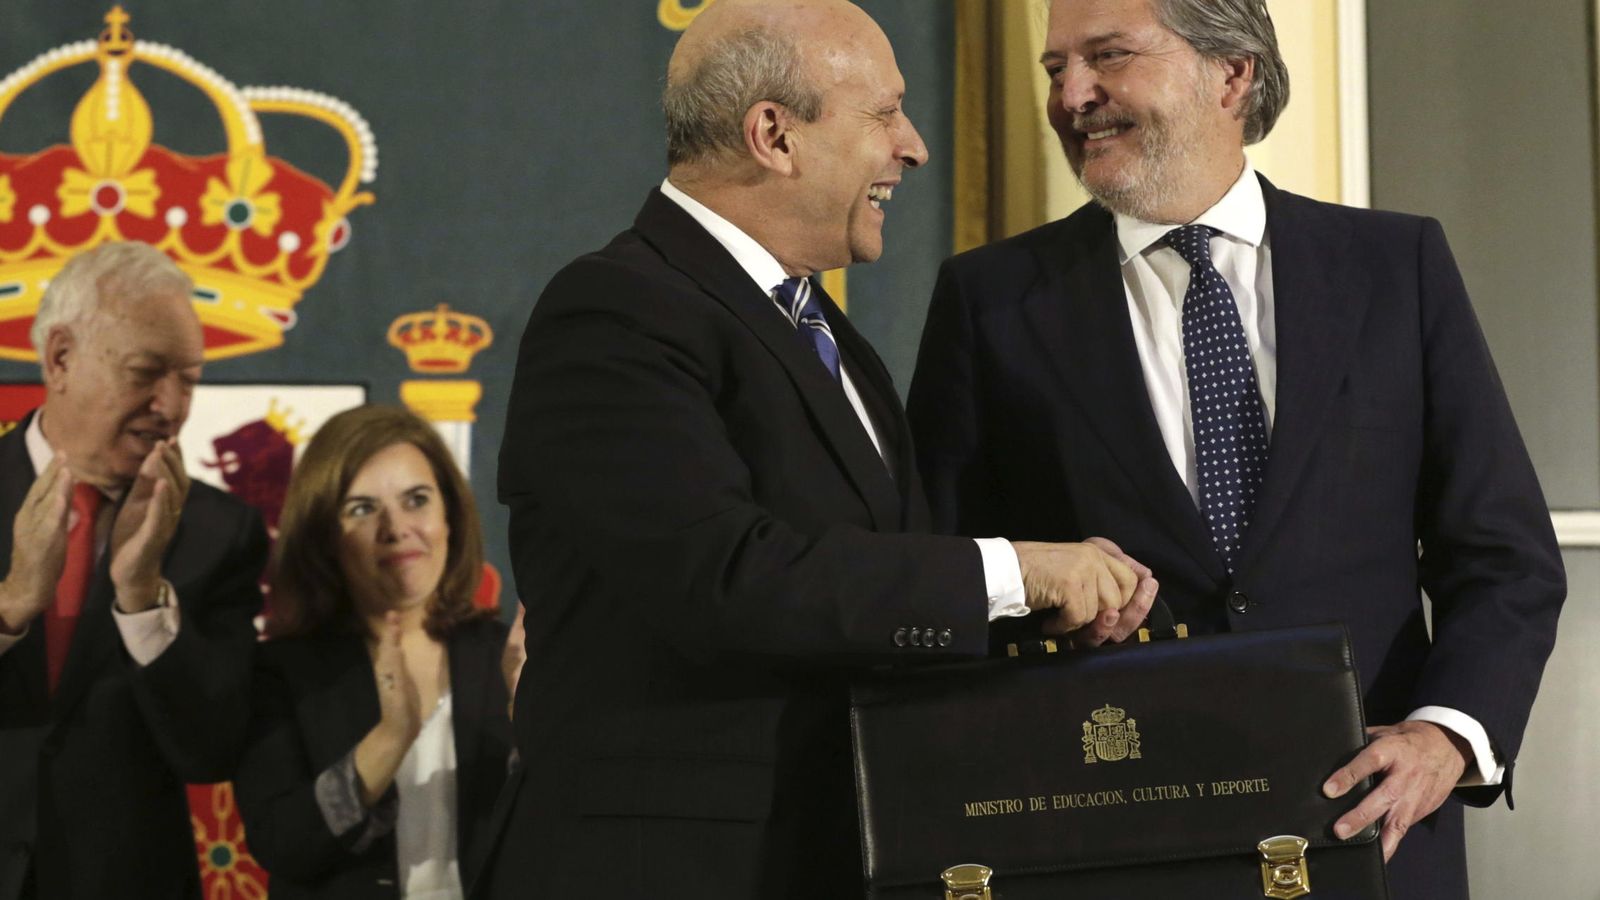 Foto: Méndez de Vigo recibe la cartera como nuevo ministro de educación de manos de su antecesor, José Ignacio Wert. (Efe)